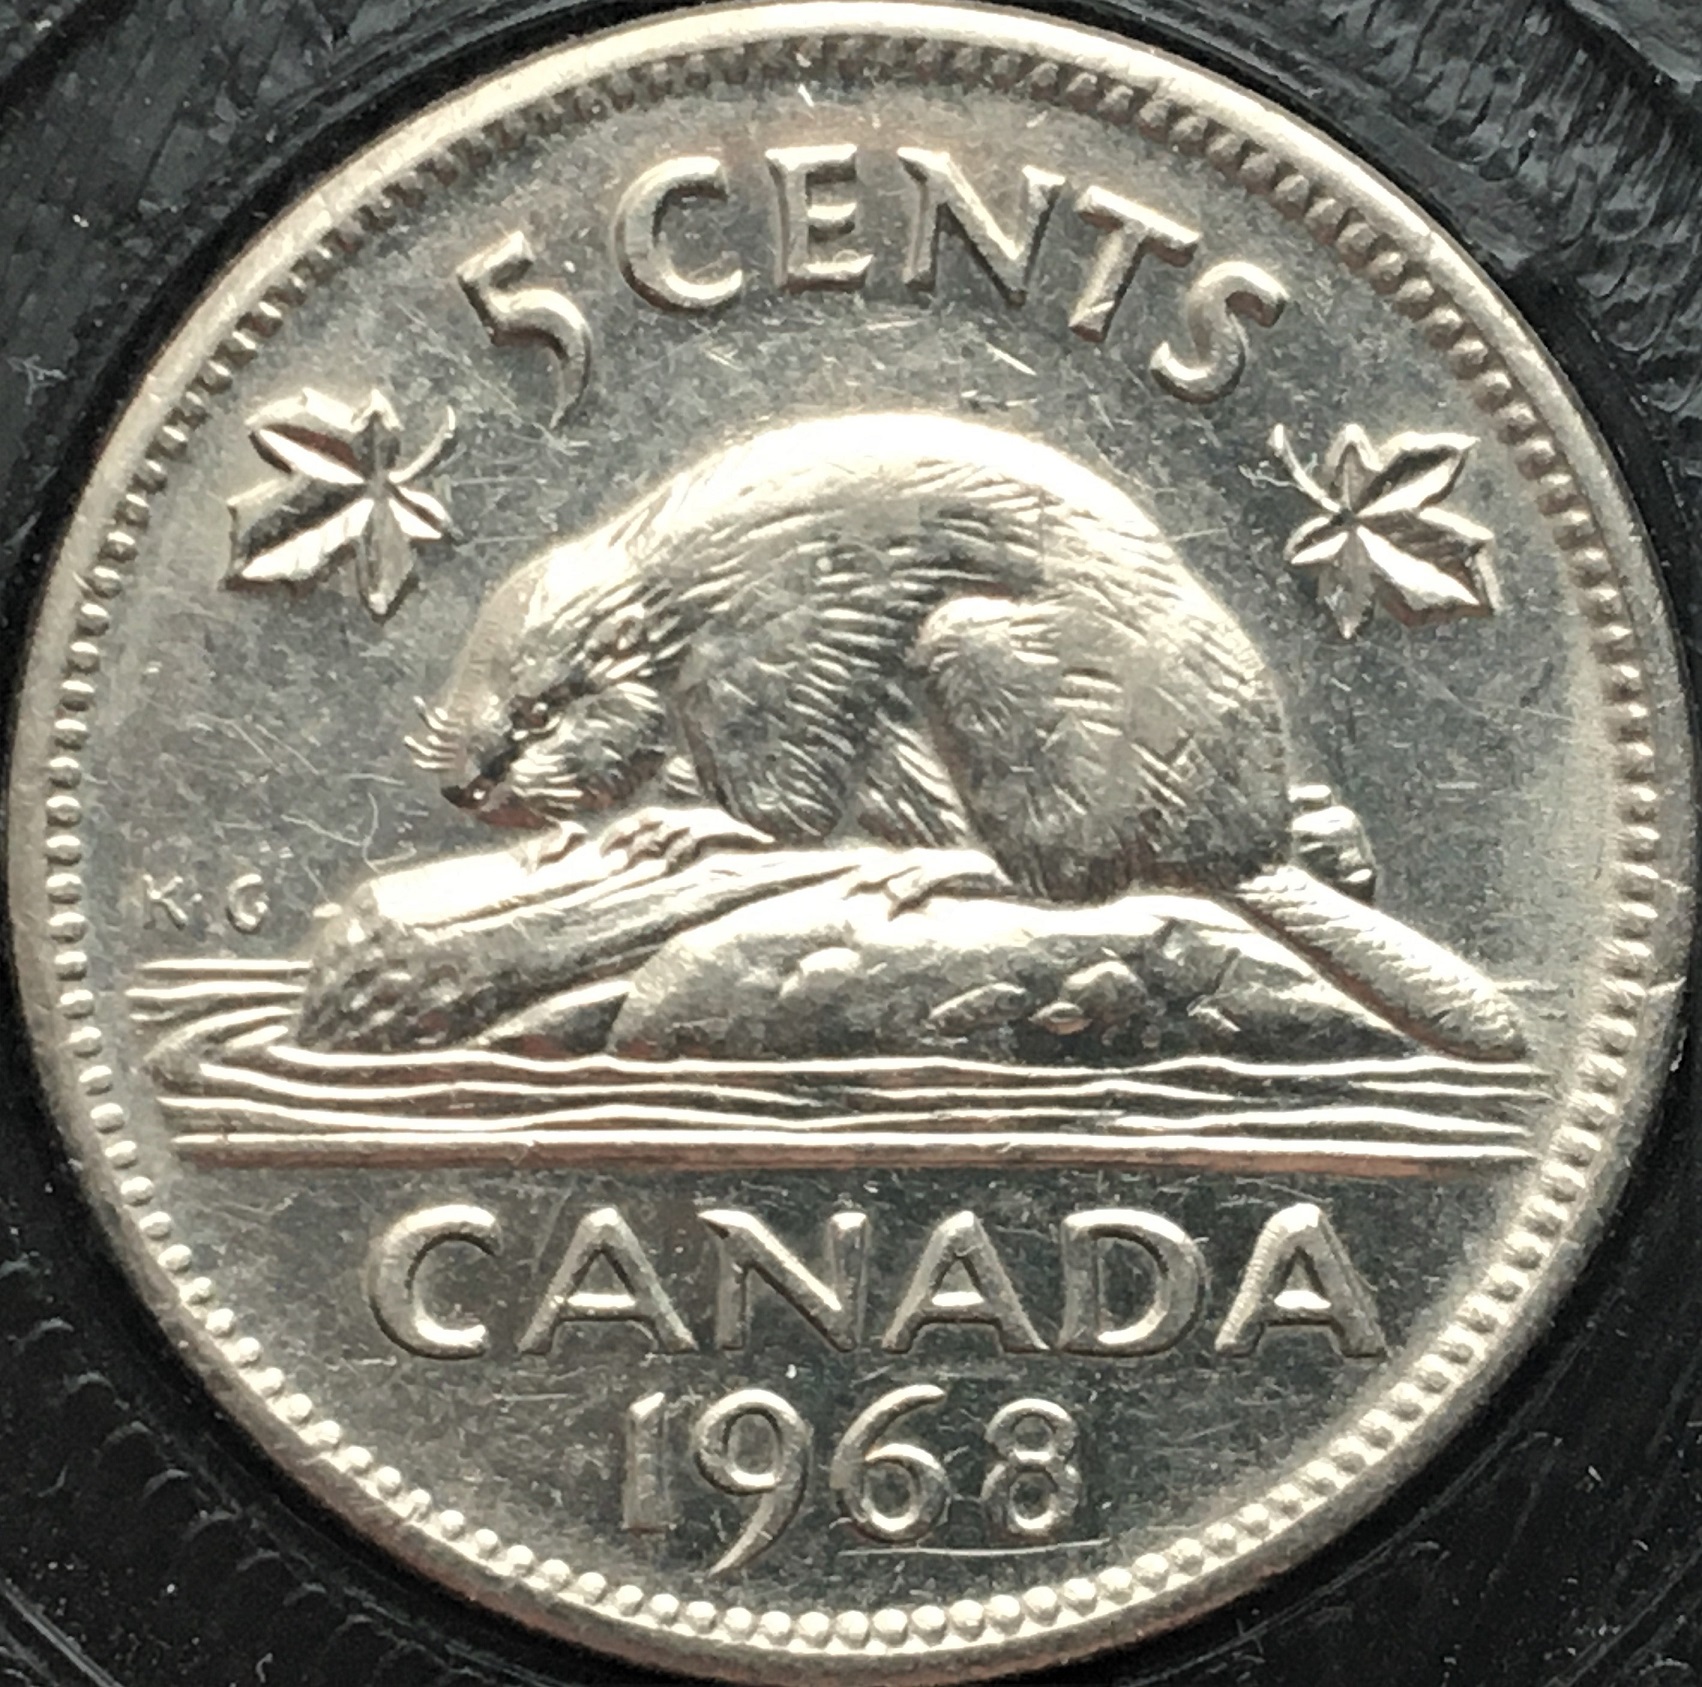 5 cents 1968 coin détérioré.jpg